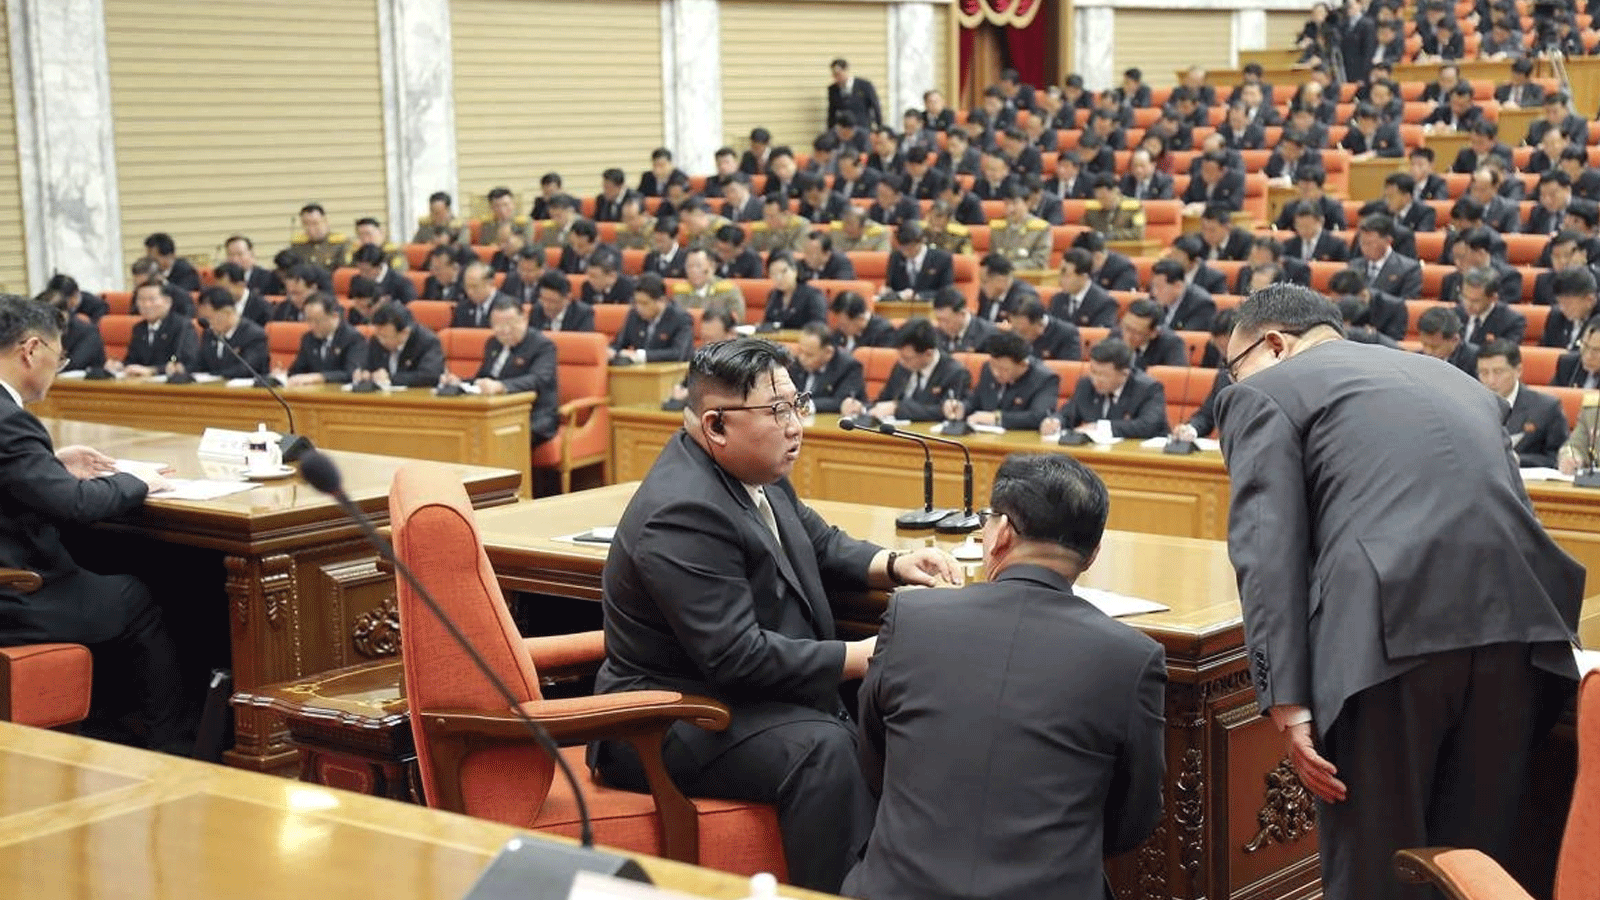 زعيم كوريا الشمالية يناقش التنمية الزراعية في اجتماع للحزب الحاكم